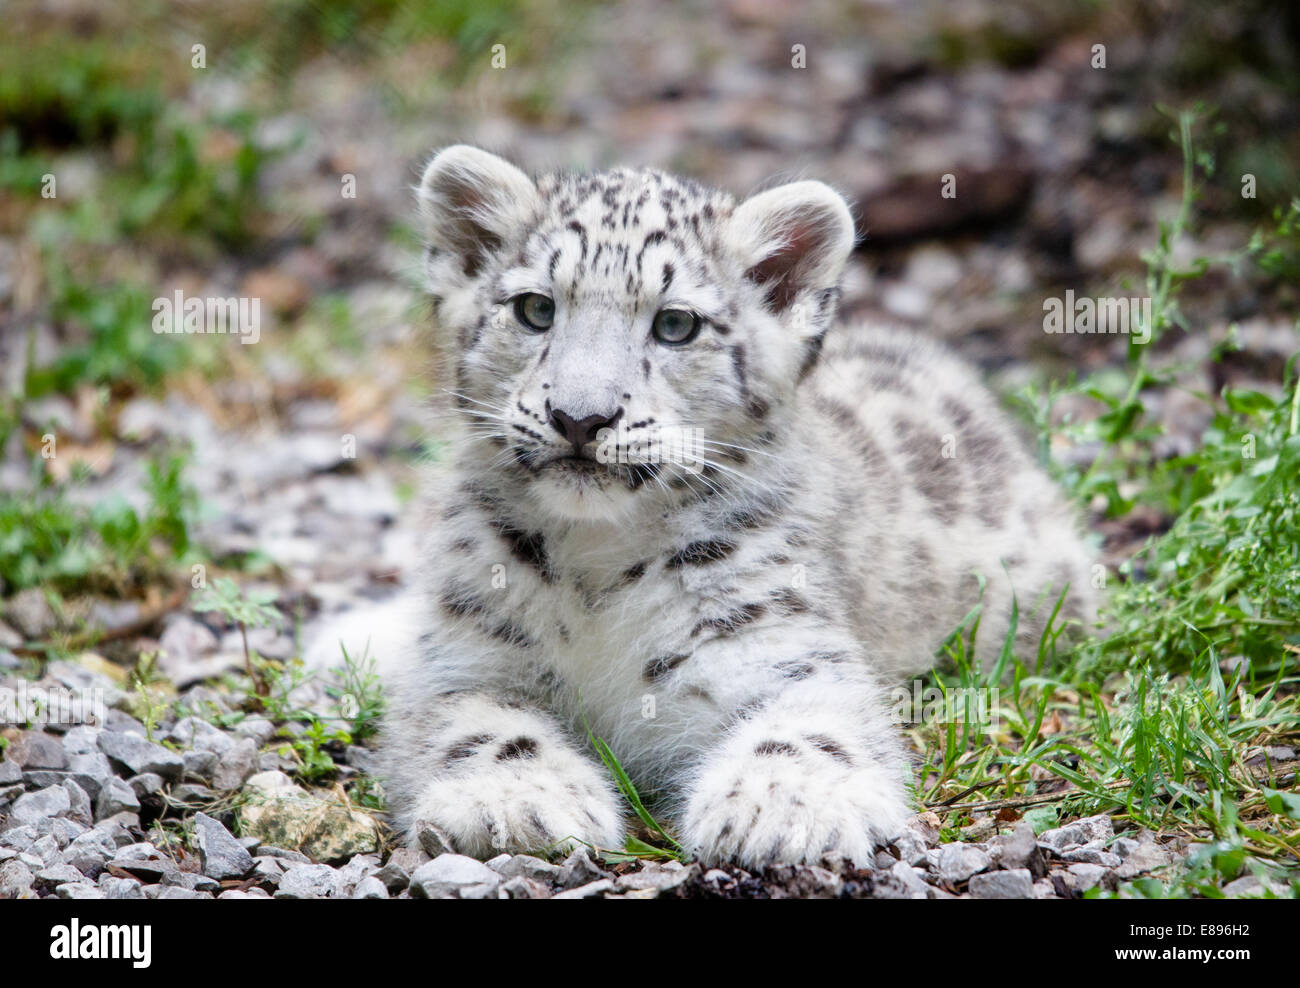 Ein einsamer snow leopard Cub auf dem Boden liegen, während gerade der Umgebung. Stockfoto